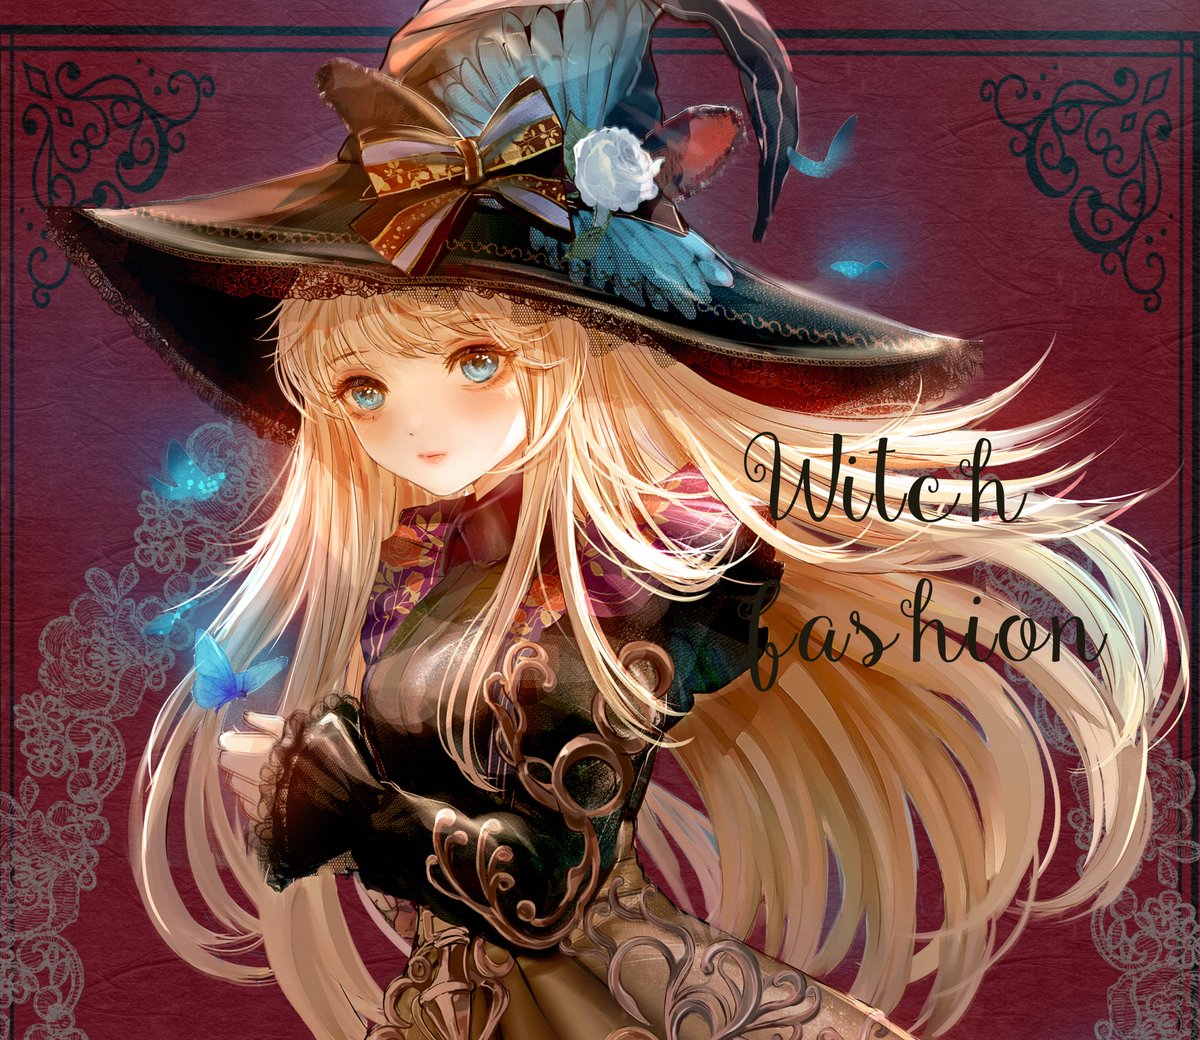 Halloween Witch Fashion 背景なし版 秋のおしゃれ魔女 こもりひっき 幻想少女絵のイラスト